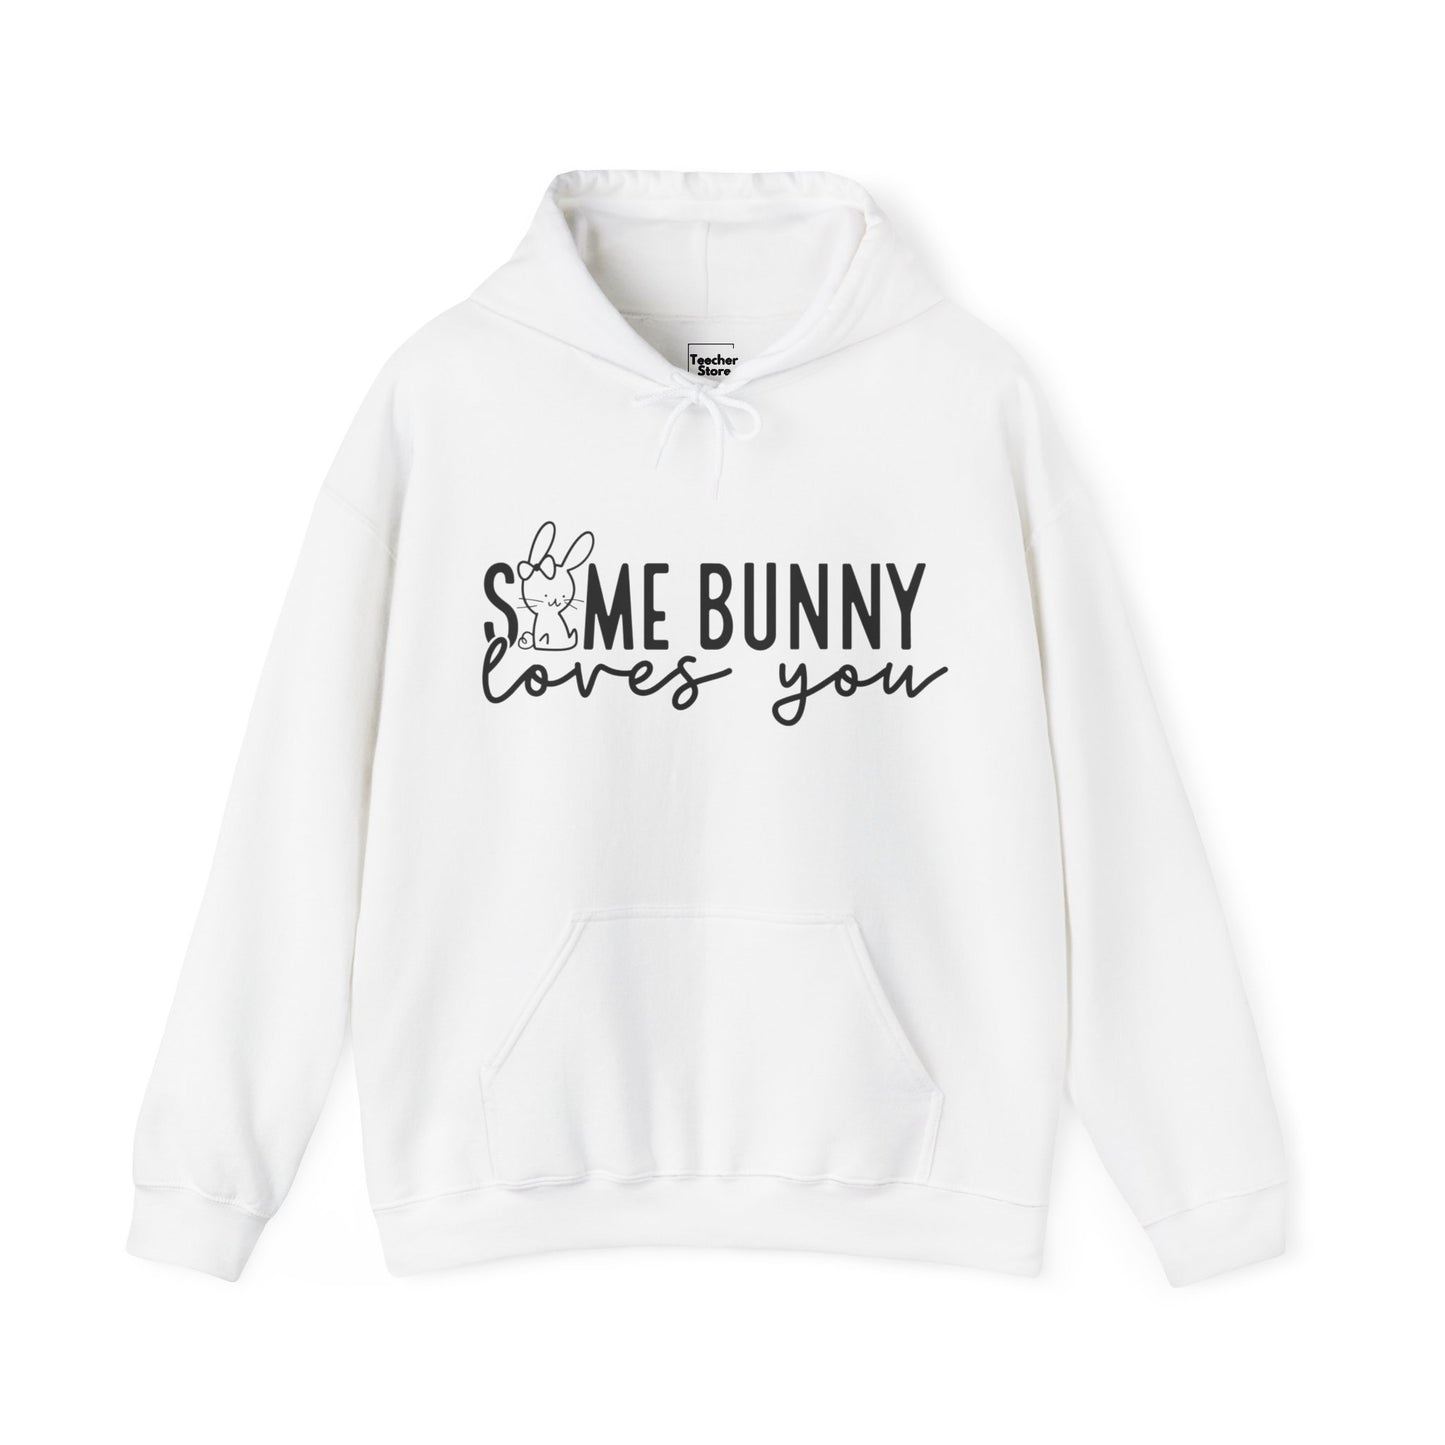 Some Bunny Hooded Sweatshirt